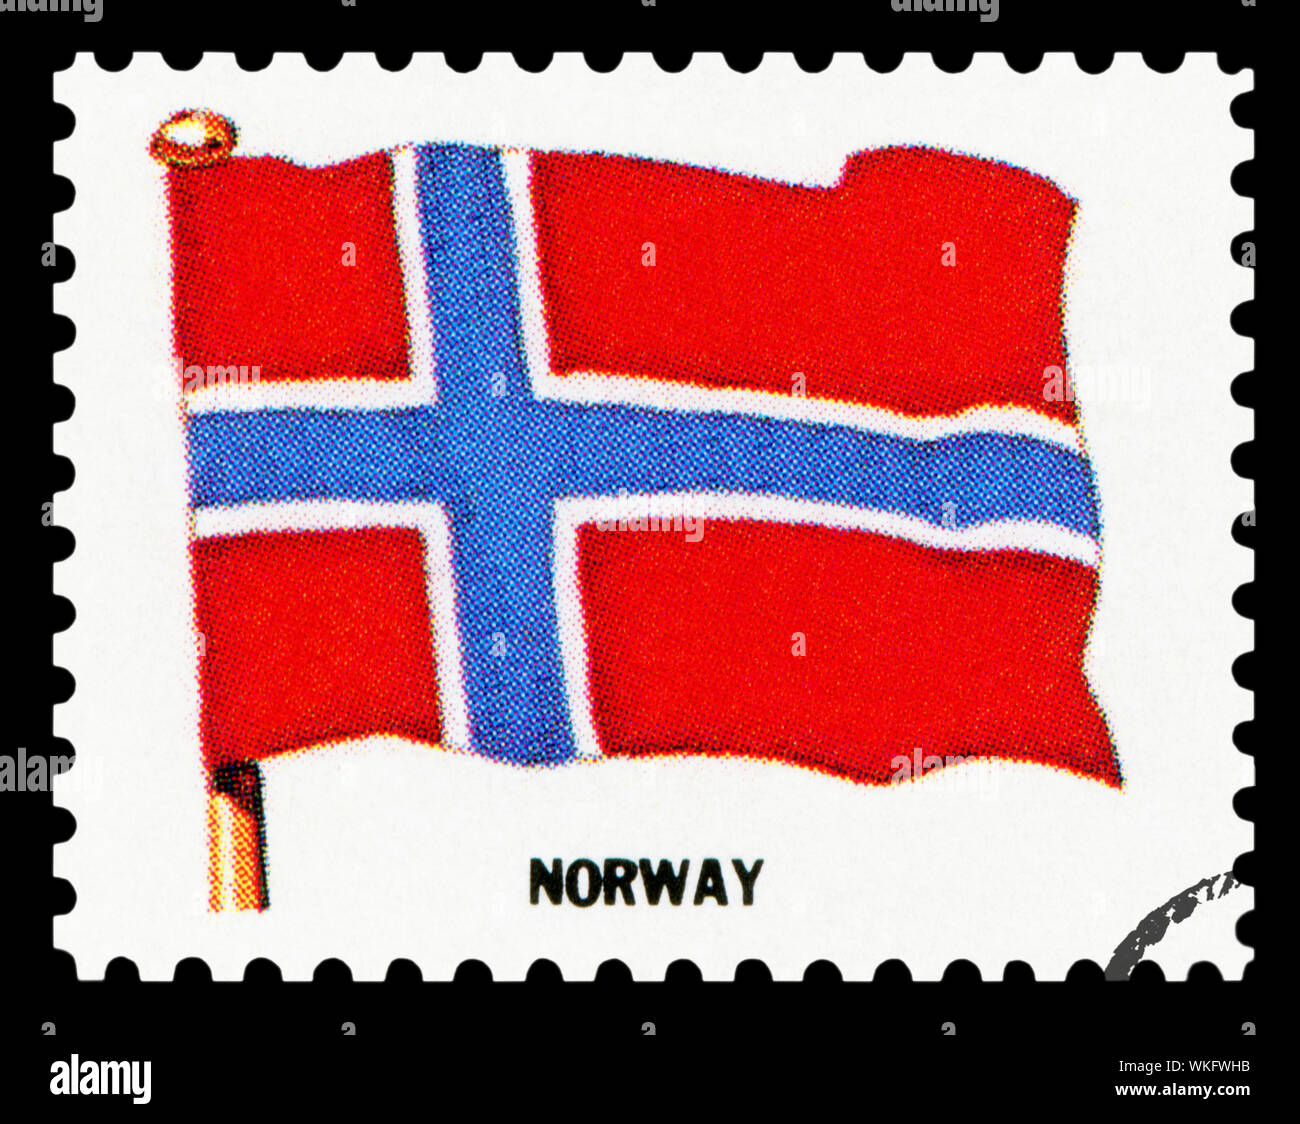 Norwegen Flagge - Briefmarke isoliert auf schwarzen Hintergrund. Stockfoto